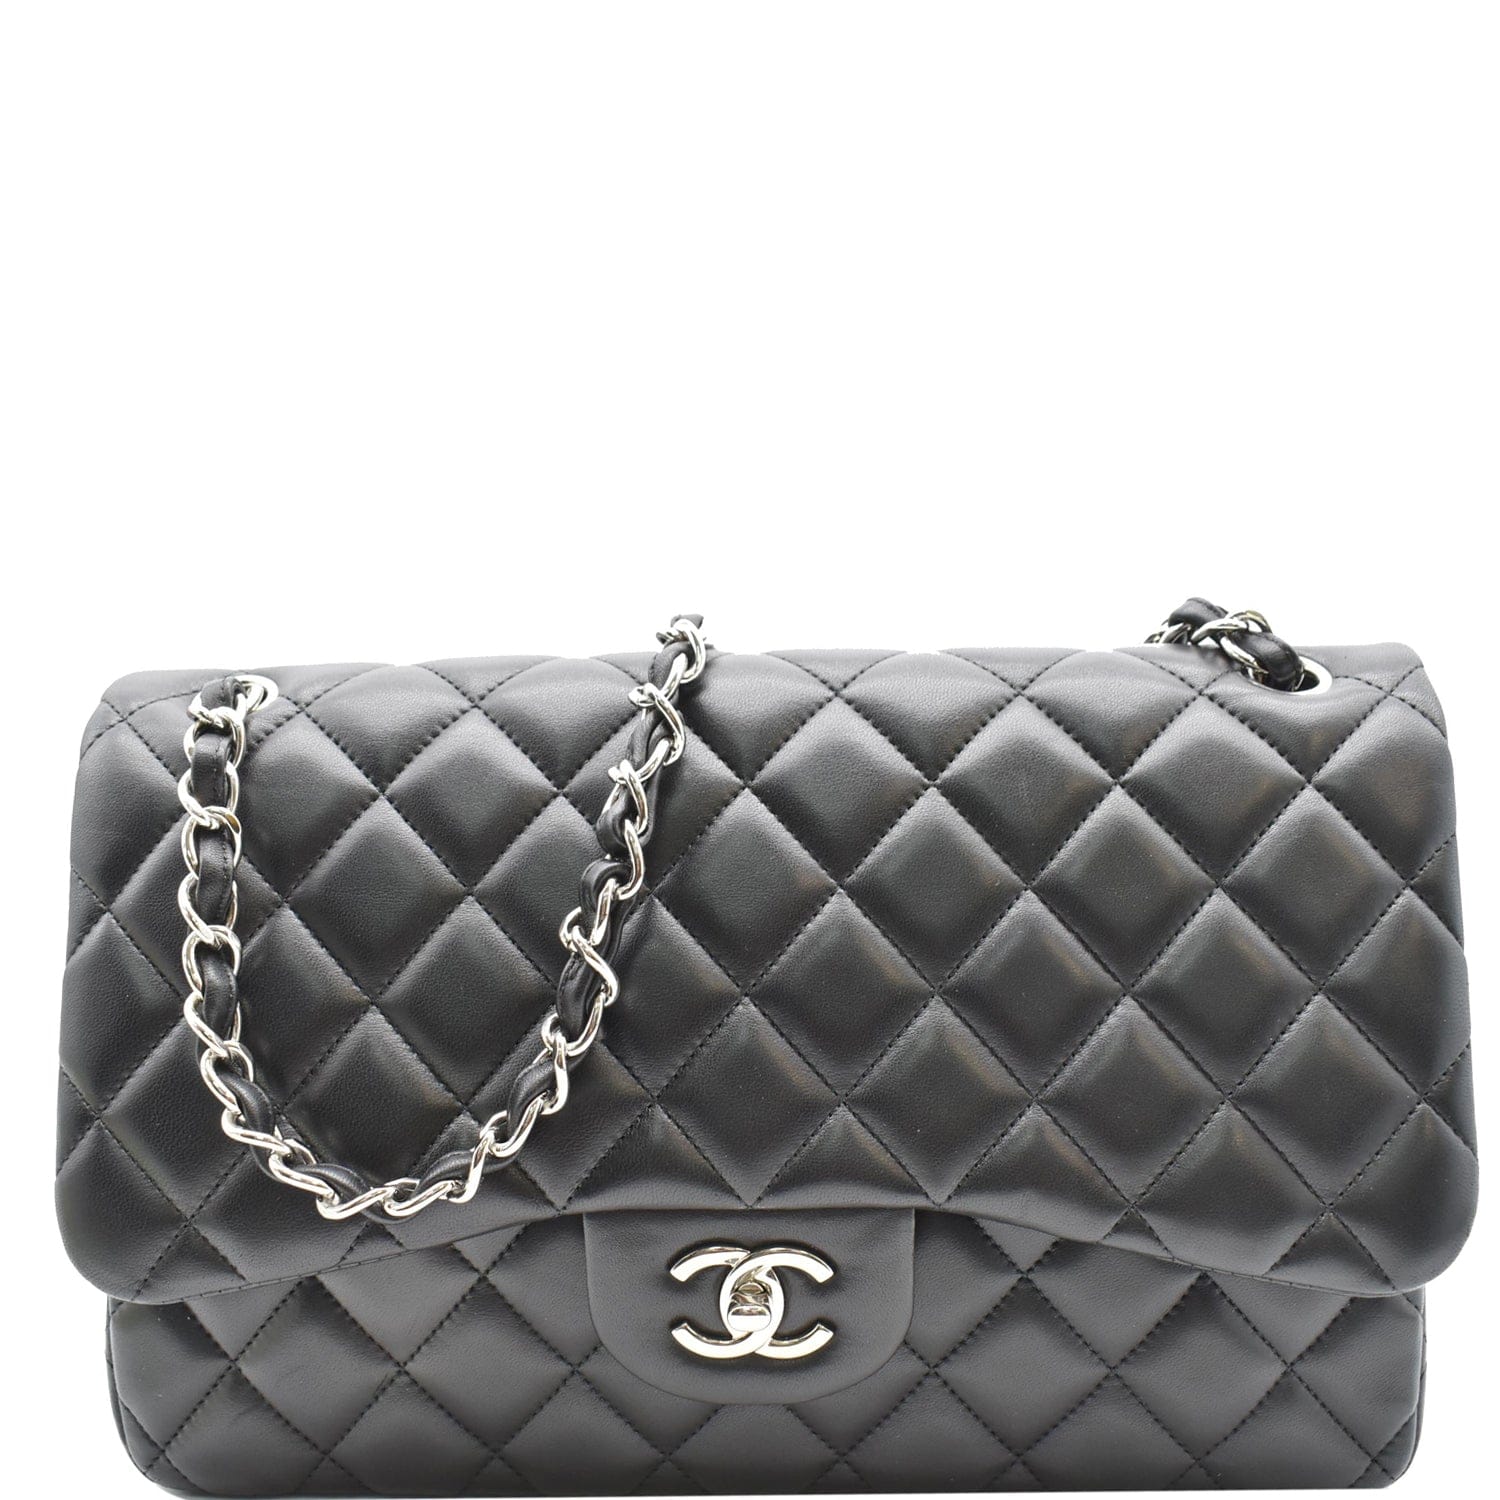 Chanel Black Leather Jumbo Classic Double Flap Bag Chanel